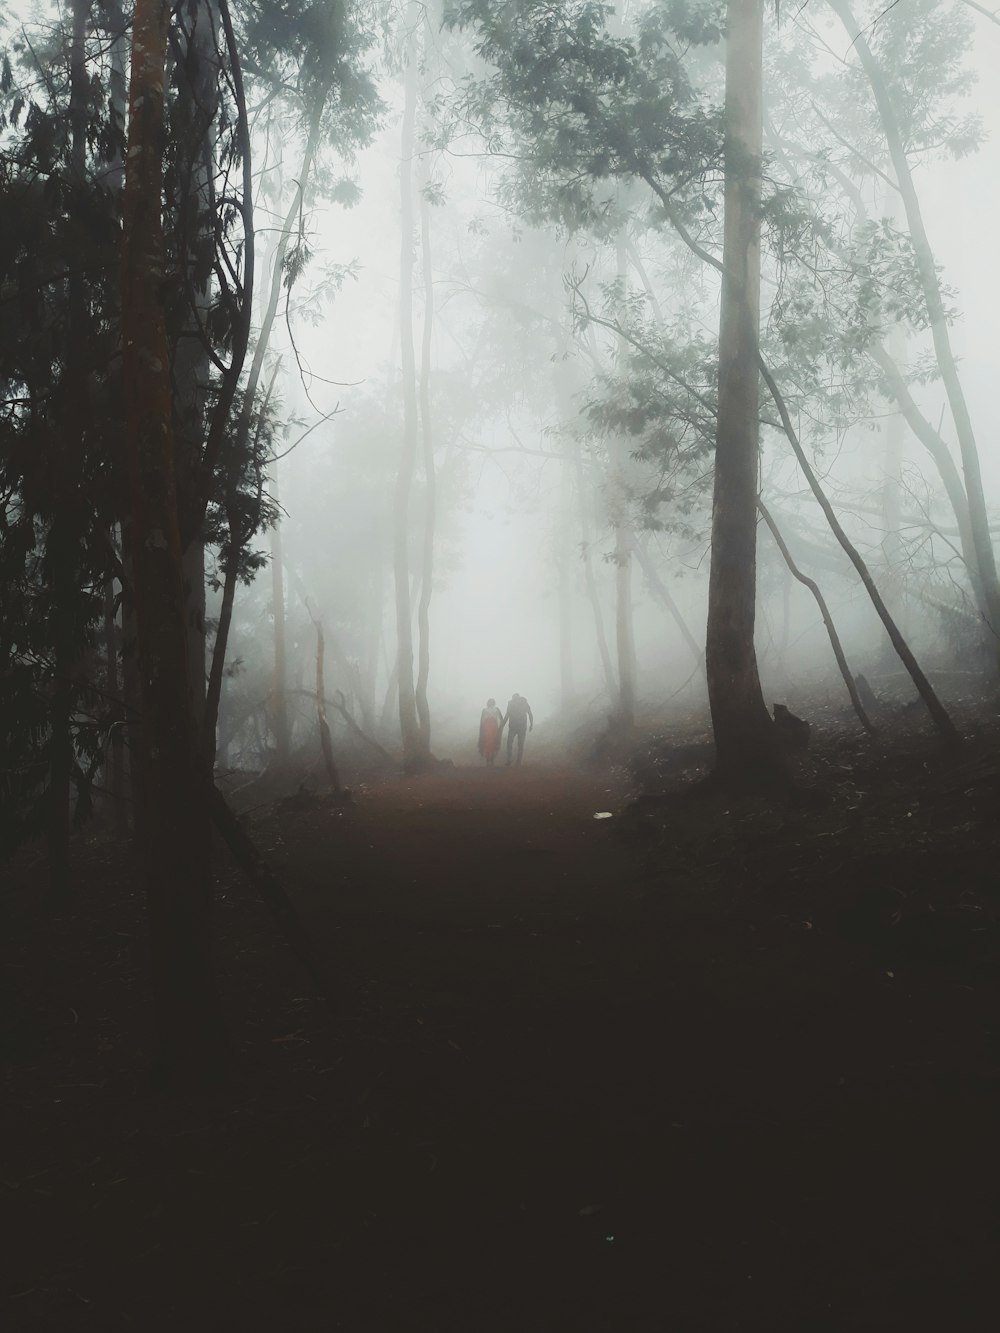 Deux personnes marchent dans une forêt brumeuse